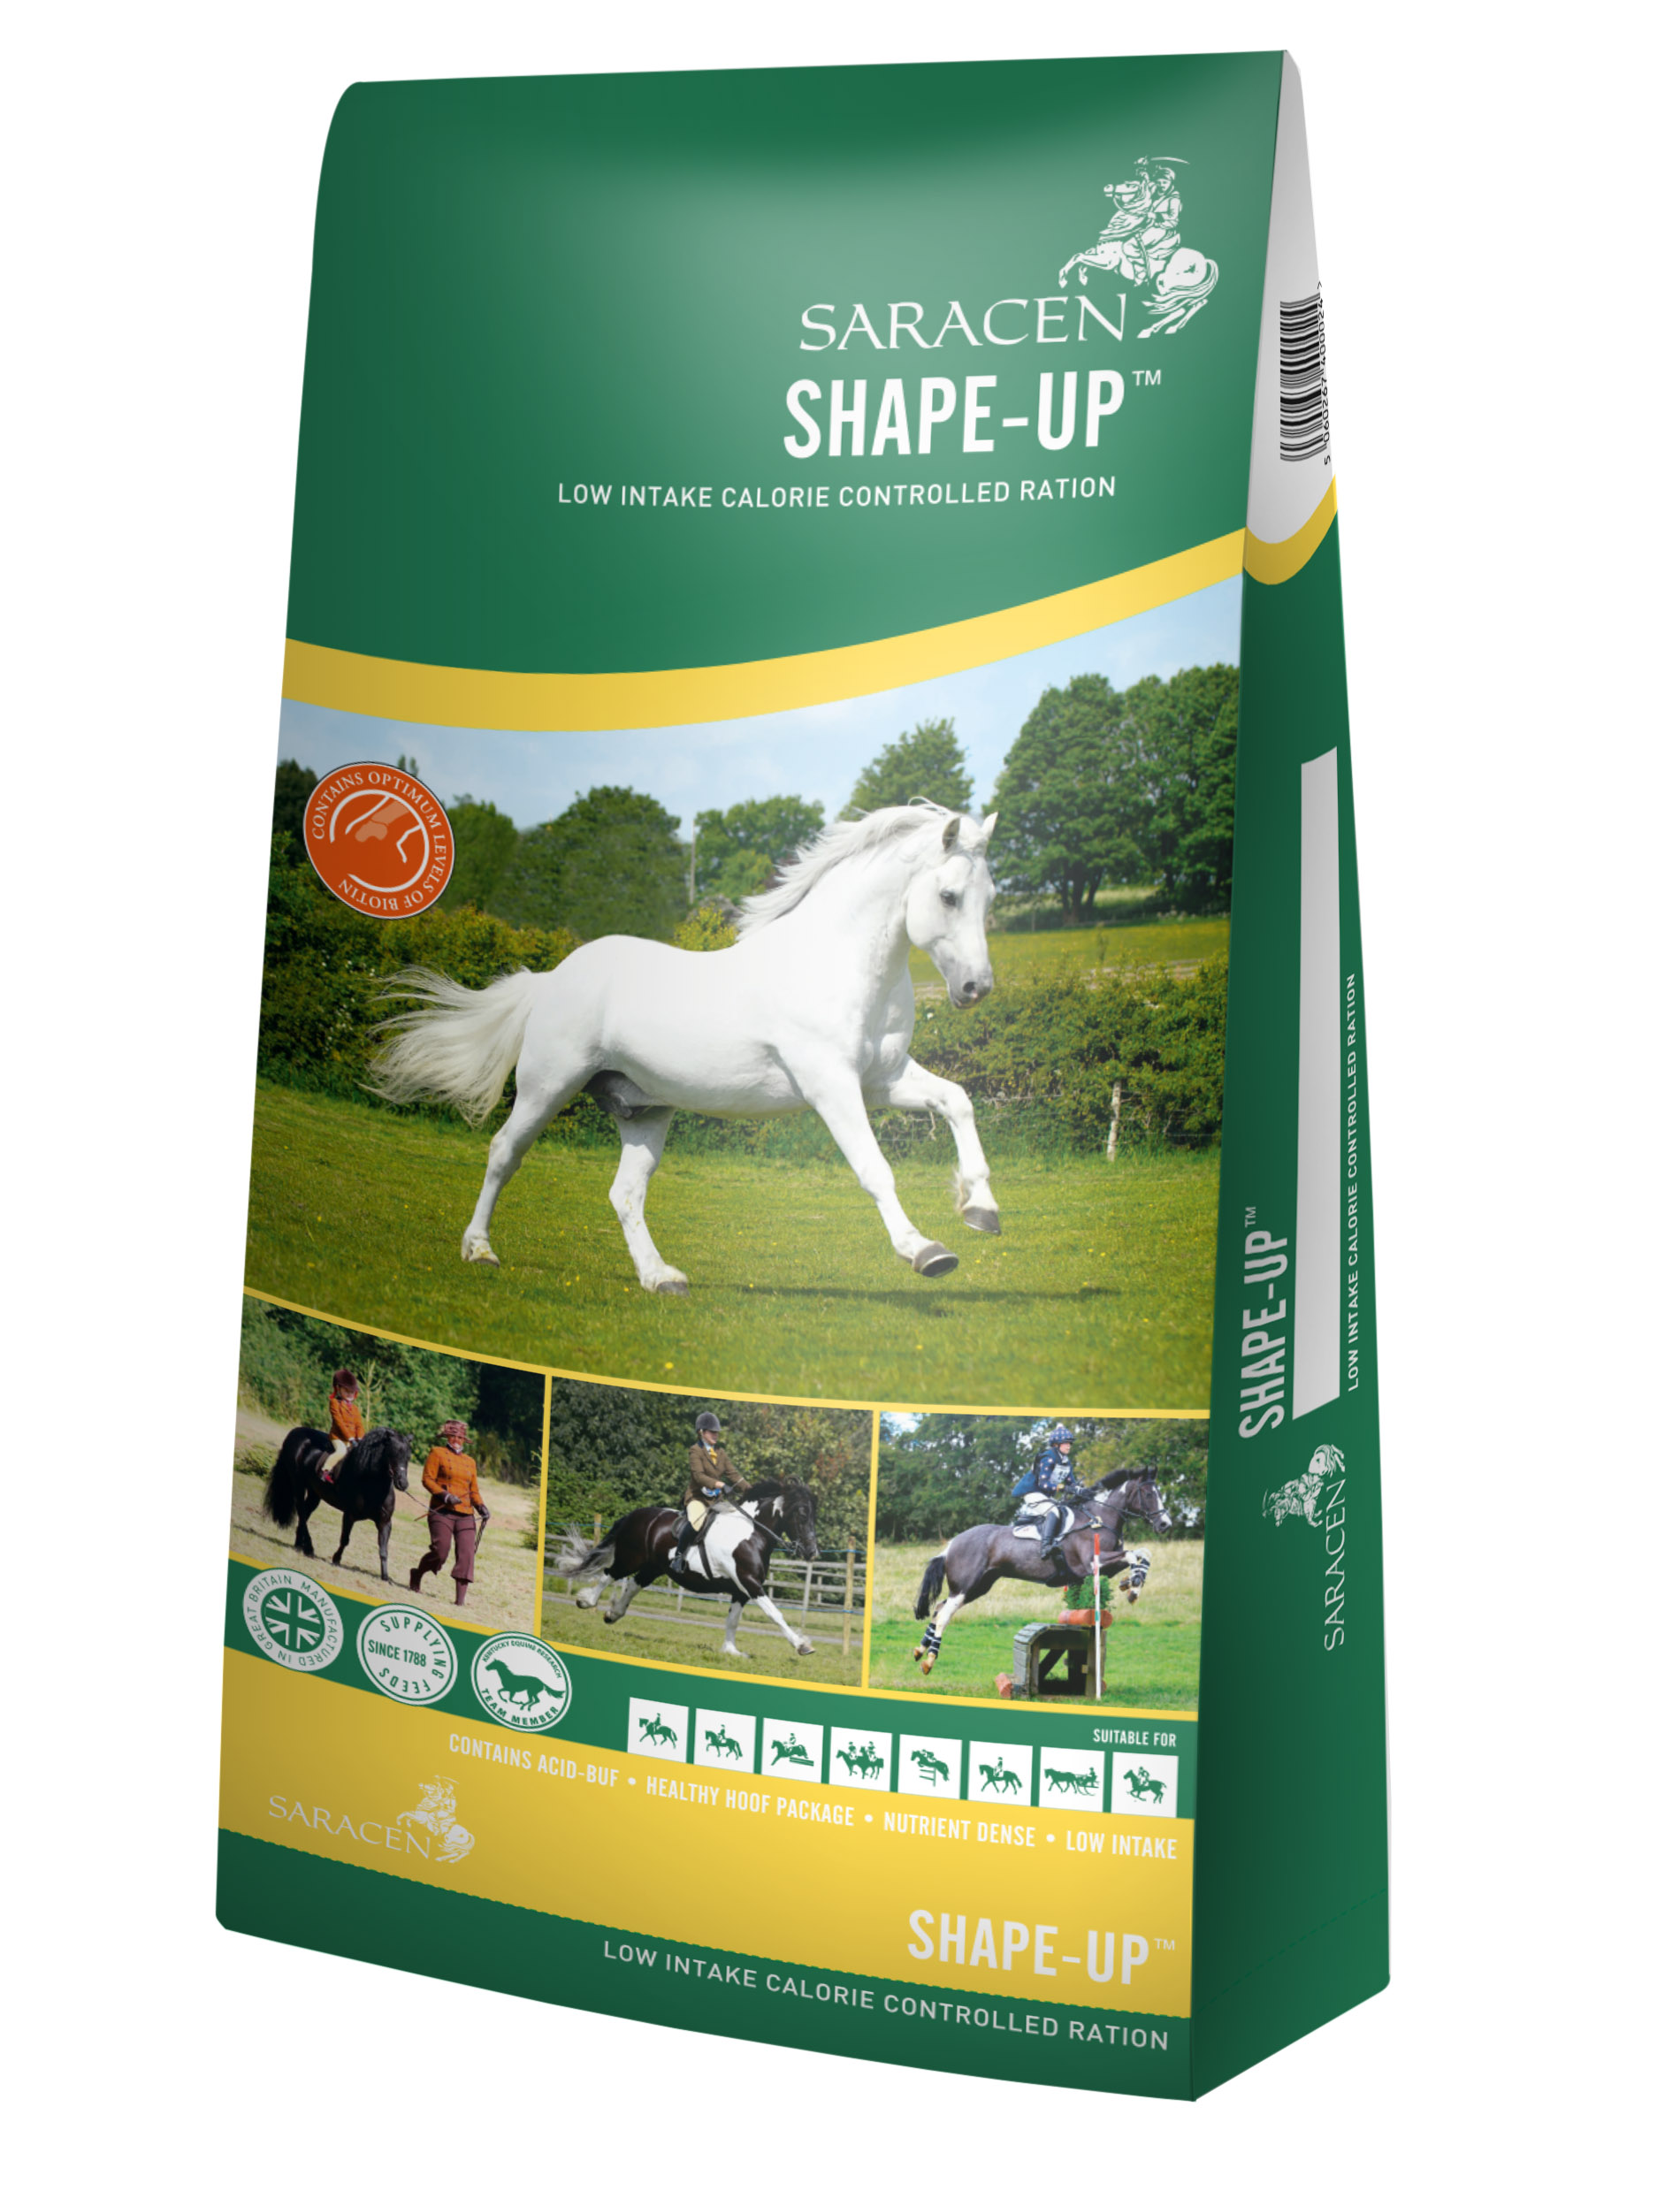 Saracen - Shape-Up - kalorienarmes Futter für leichtfuttrige Pferde - mit hohem Rohfasergehalt